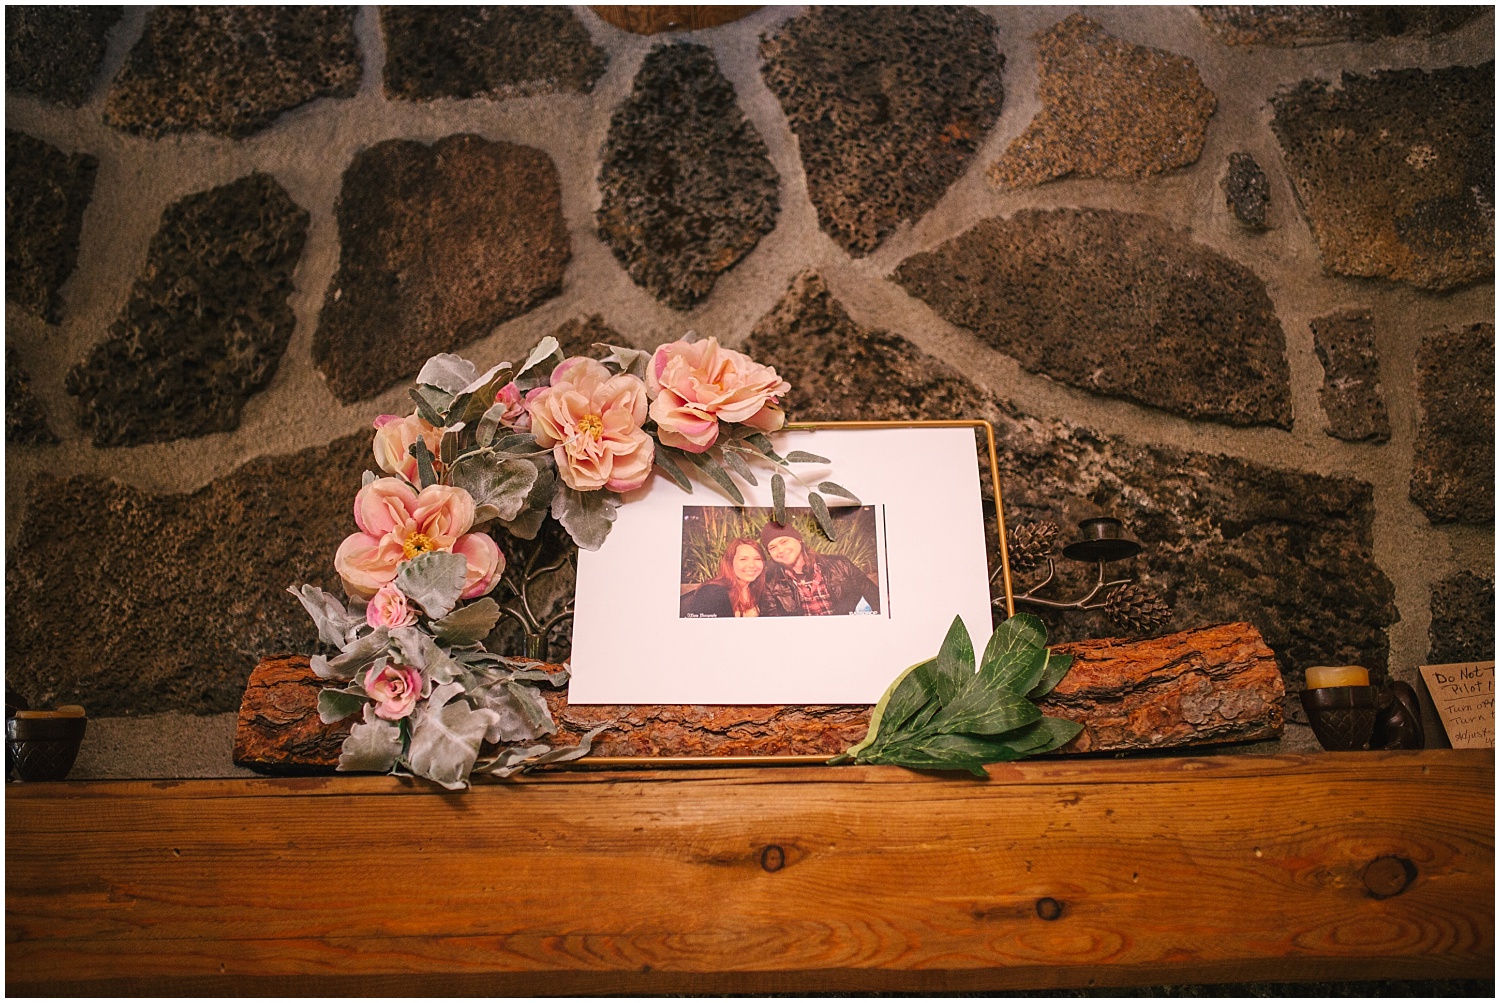 Intimate mountain cabin wedding photos | Colorado Springs wedding photographer